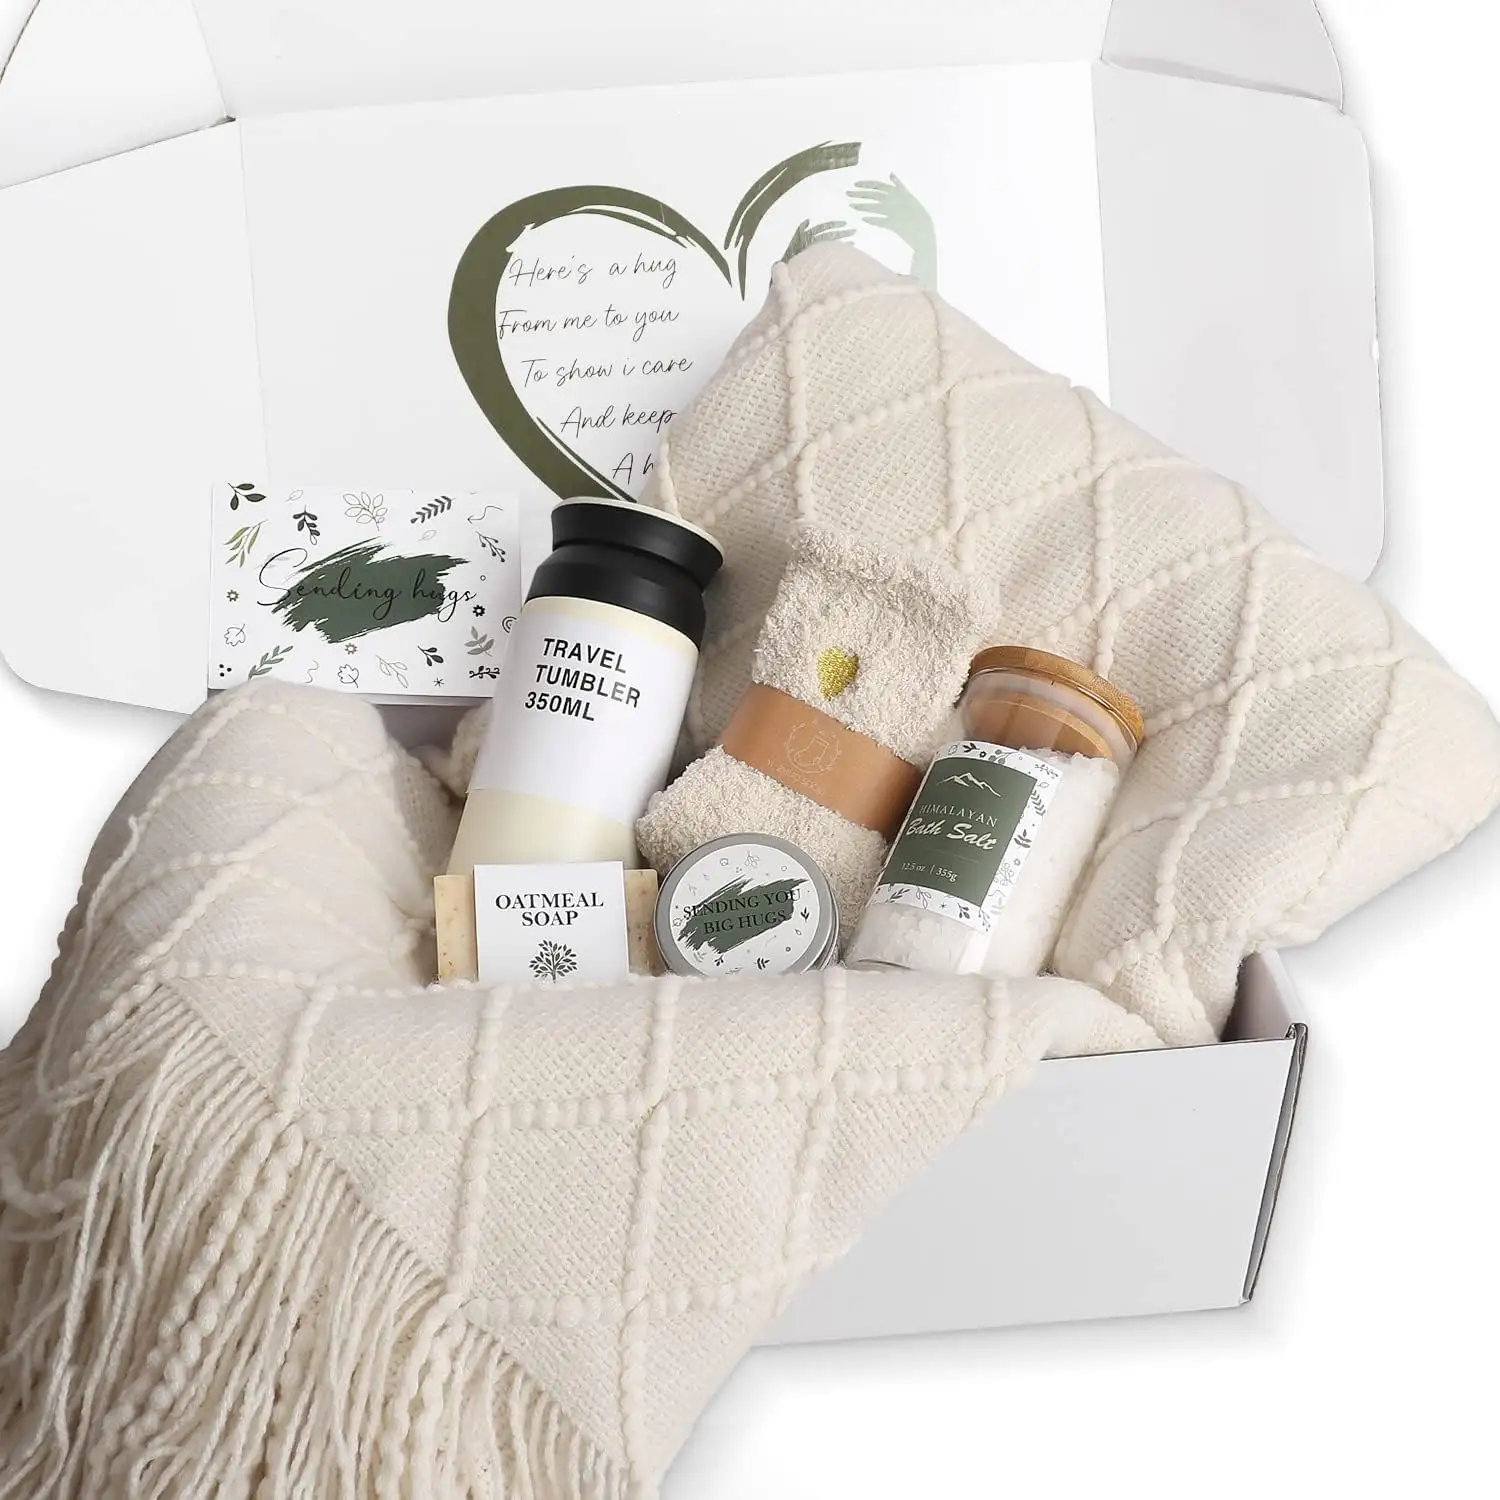 Set regalo antistress di nuovo stile per le donne con candele profumate sali da bagno di sapone e calzini morbidi personalizzati per fare bene il regalo presto